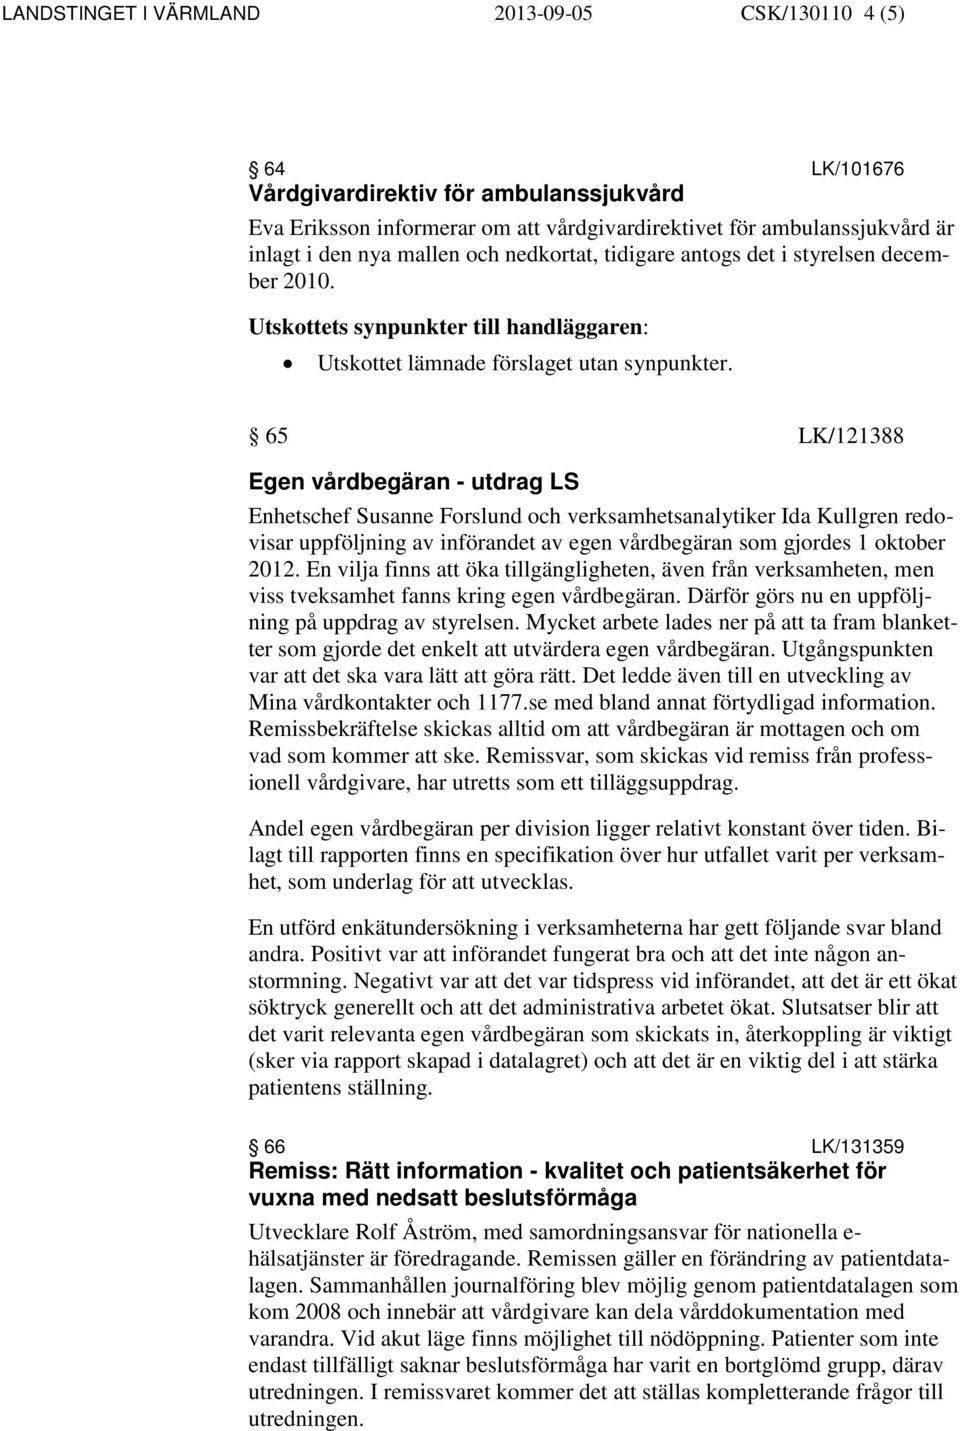 65 LK/121388 Egen vårdbegäran - utdrag LS Enhetschef Susanne Forslund och verksamhetsanalytiker Ida Kullgren redovisar uppföljning av införandet av egen vårdbegäran som gjordes 1 oktober 2012.